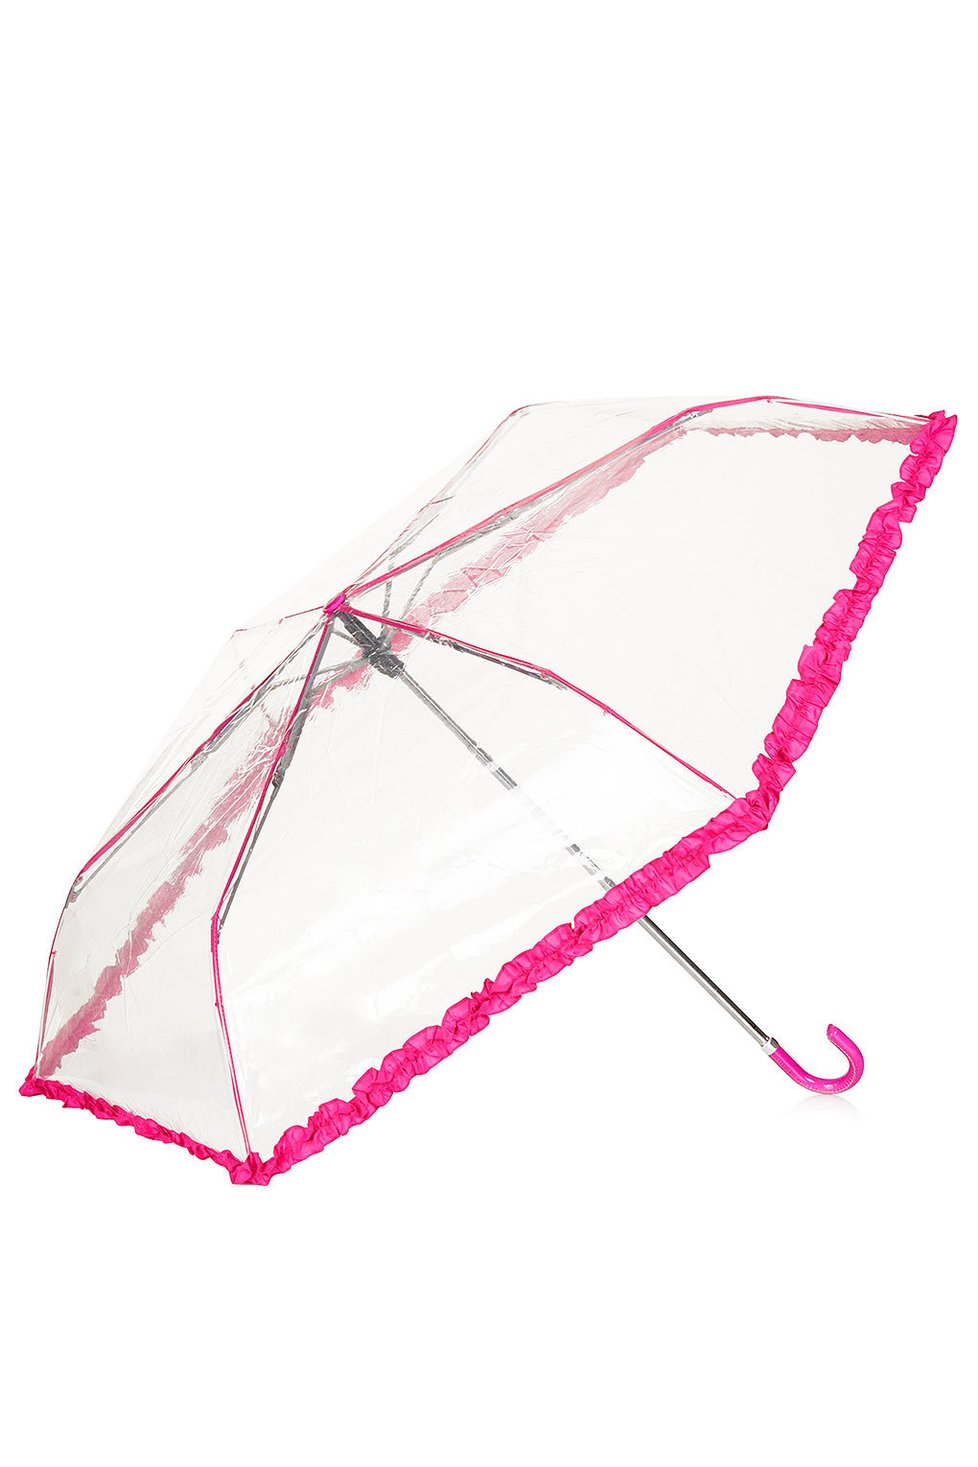 Deštník, Topshop, www.topshop.com, cca. 480 Kč.